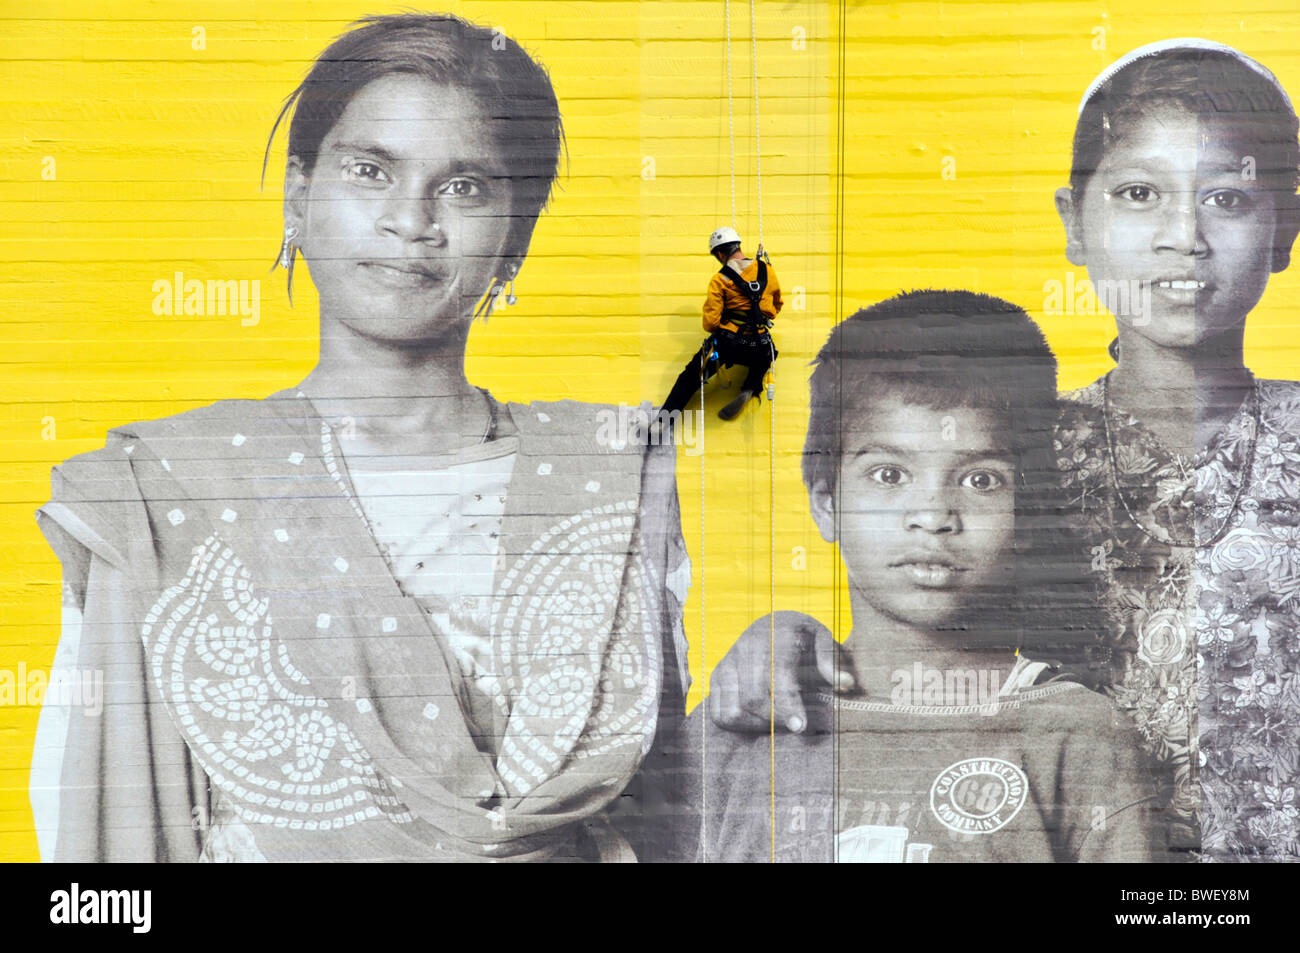 Photo poster géant de fixation des ouvriers pour le Théâtre National dans le cadre d'Aviva 'Vous êtes l'Ensemble' campagne publicitaire mondiale Banque D'Images